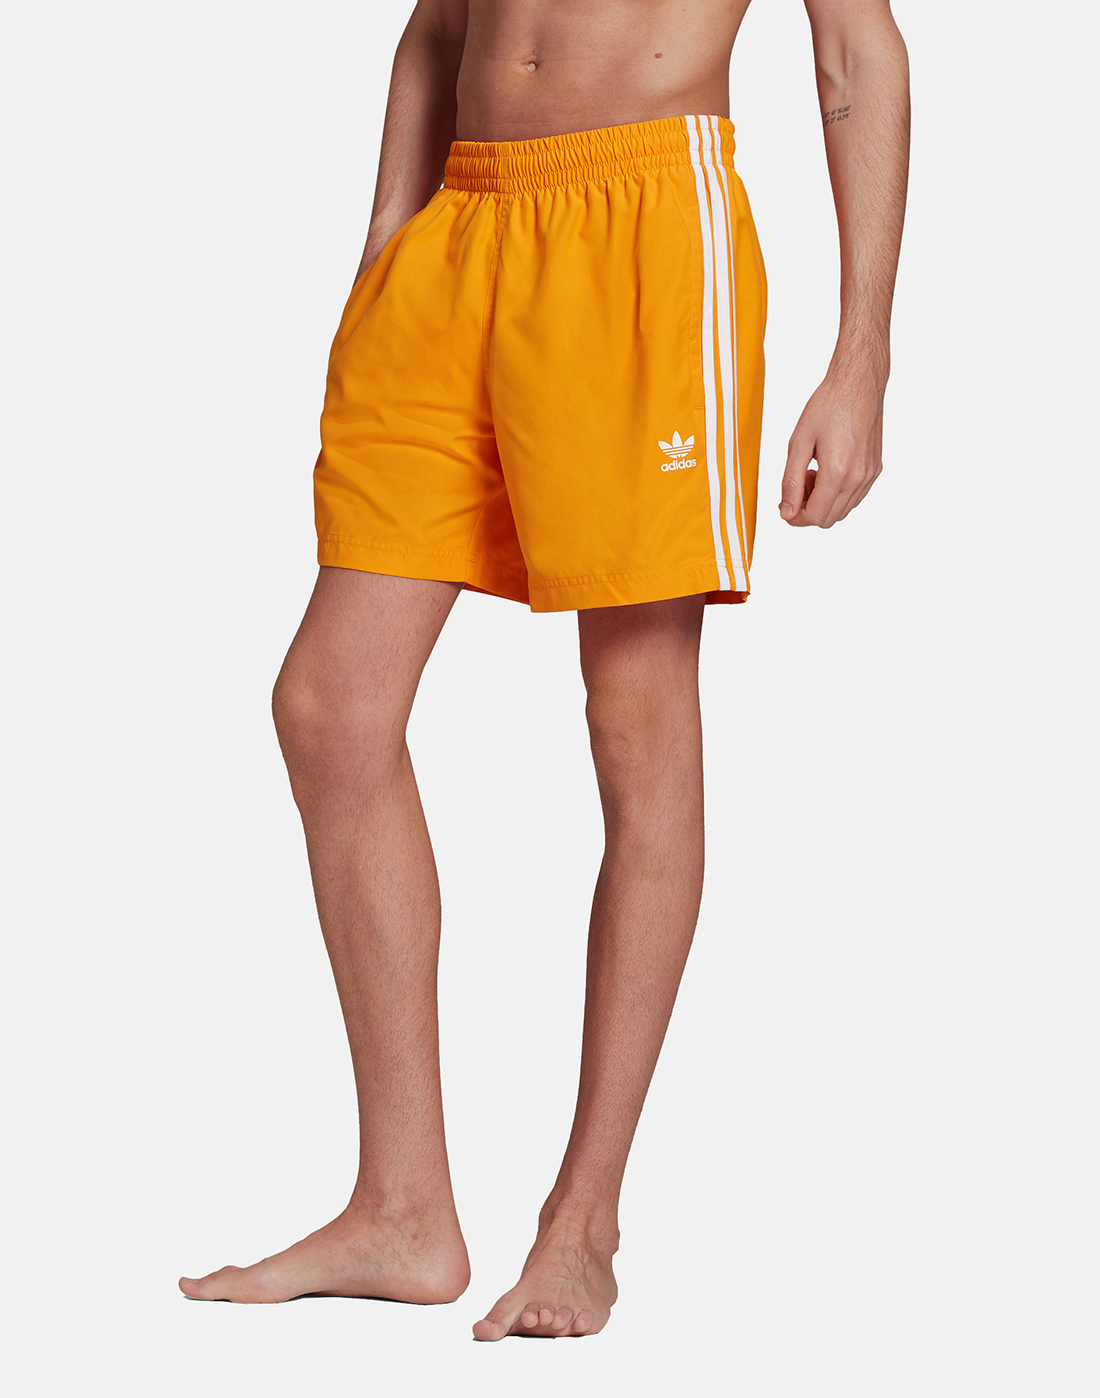 adidas Originals Mens 3 Stripes Shorts - Orange | Life Style Sports UK